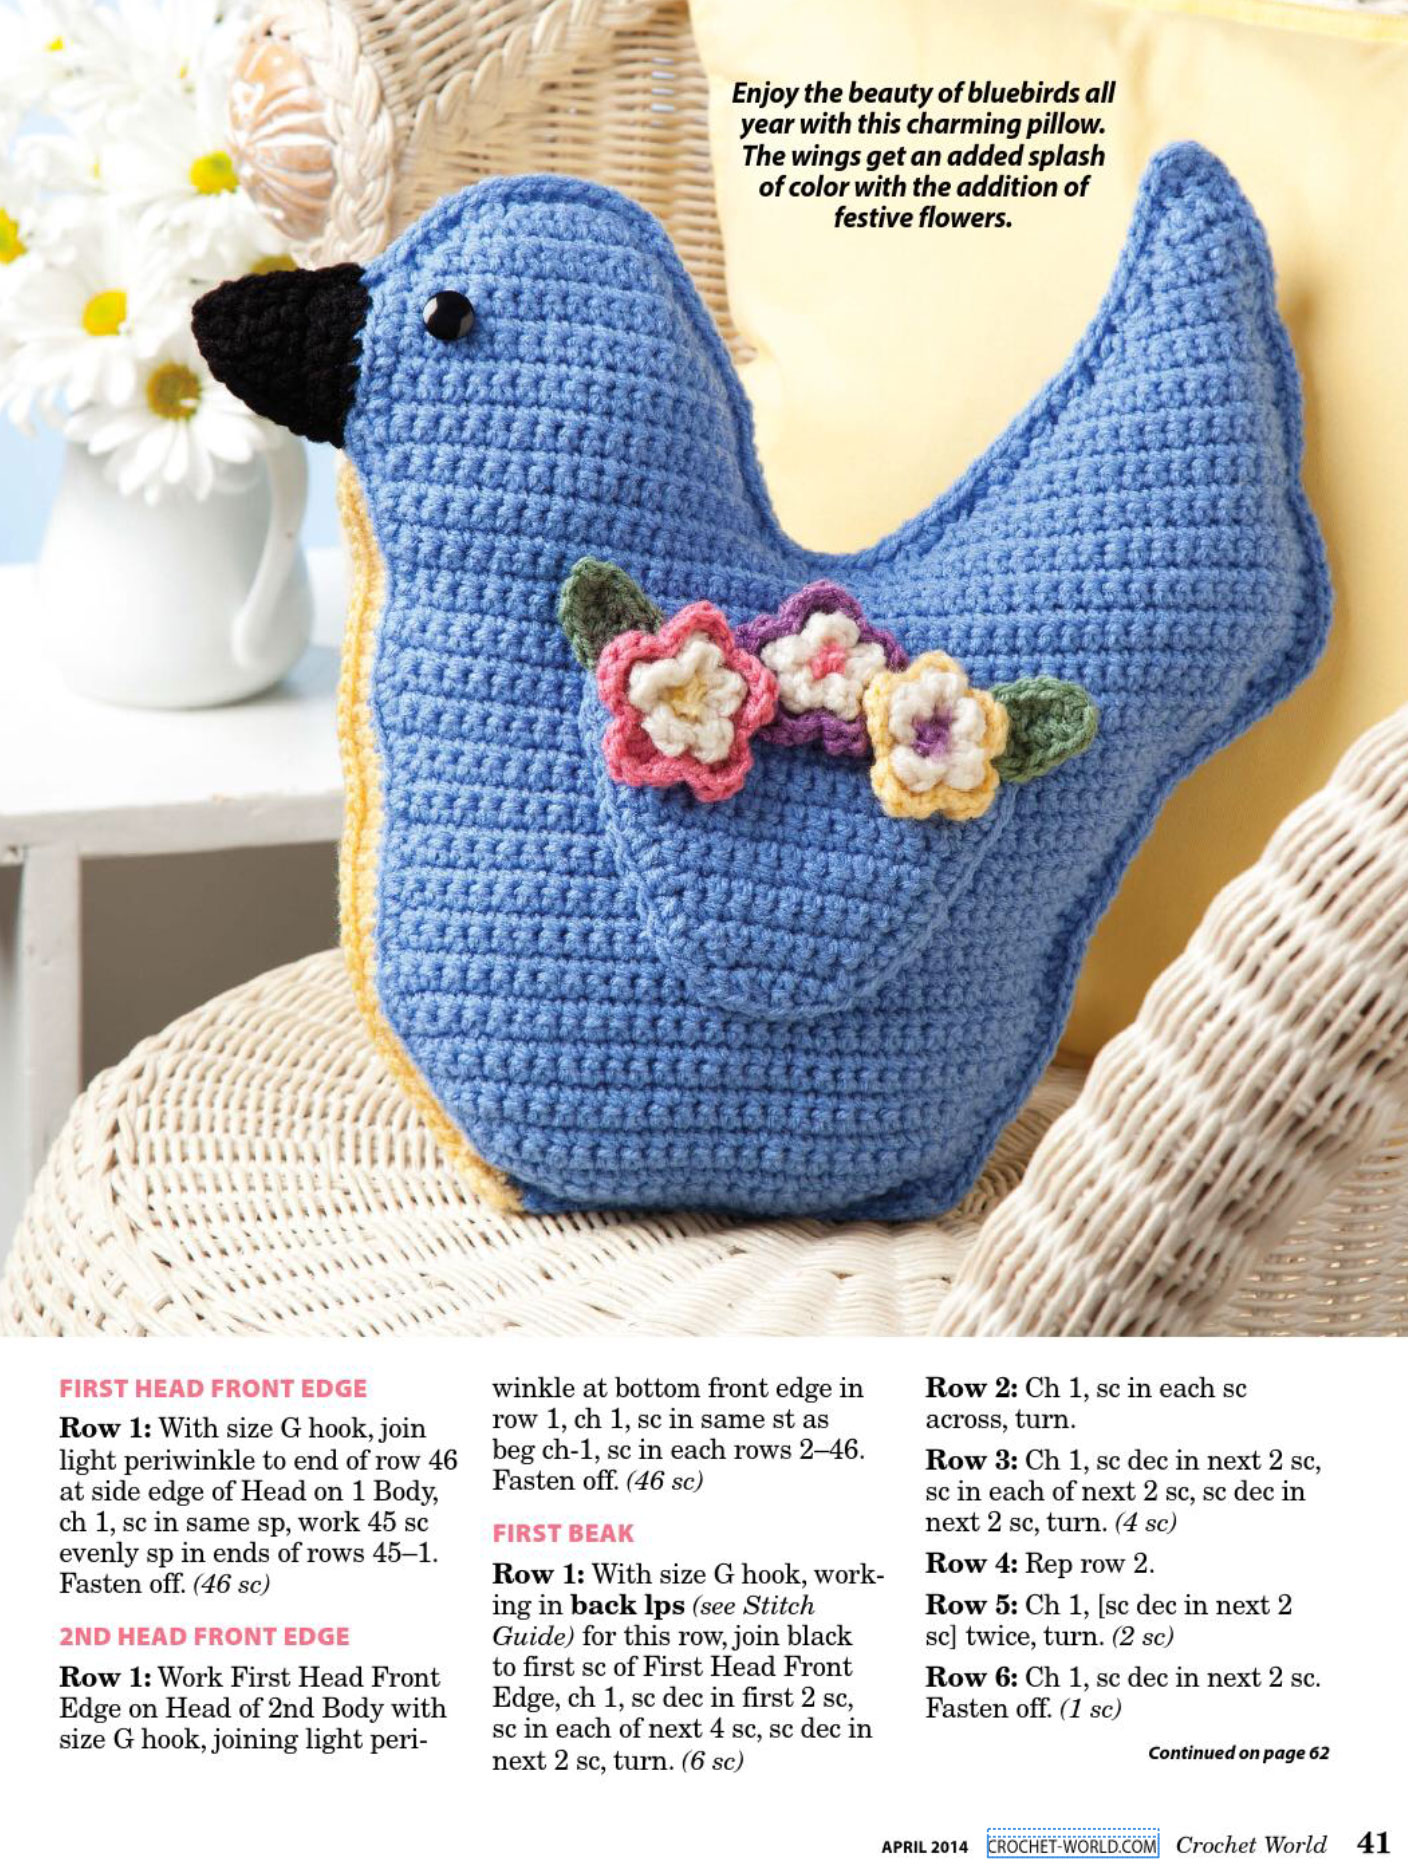 Bluebird-pillow-crochet-pattern-1